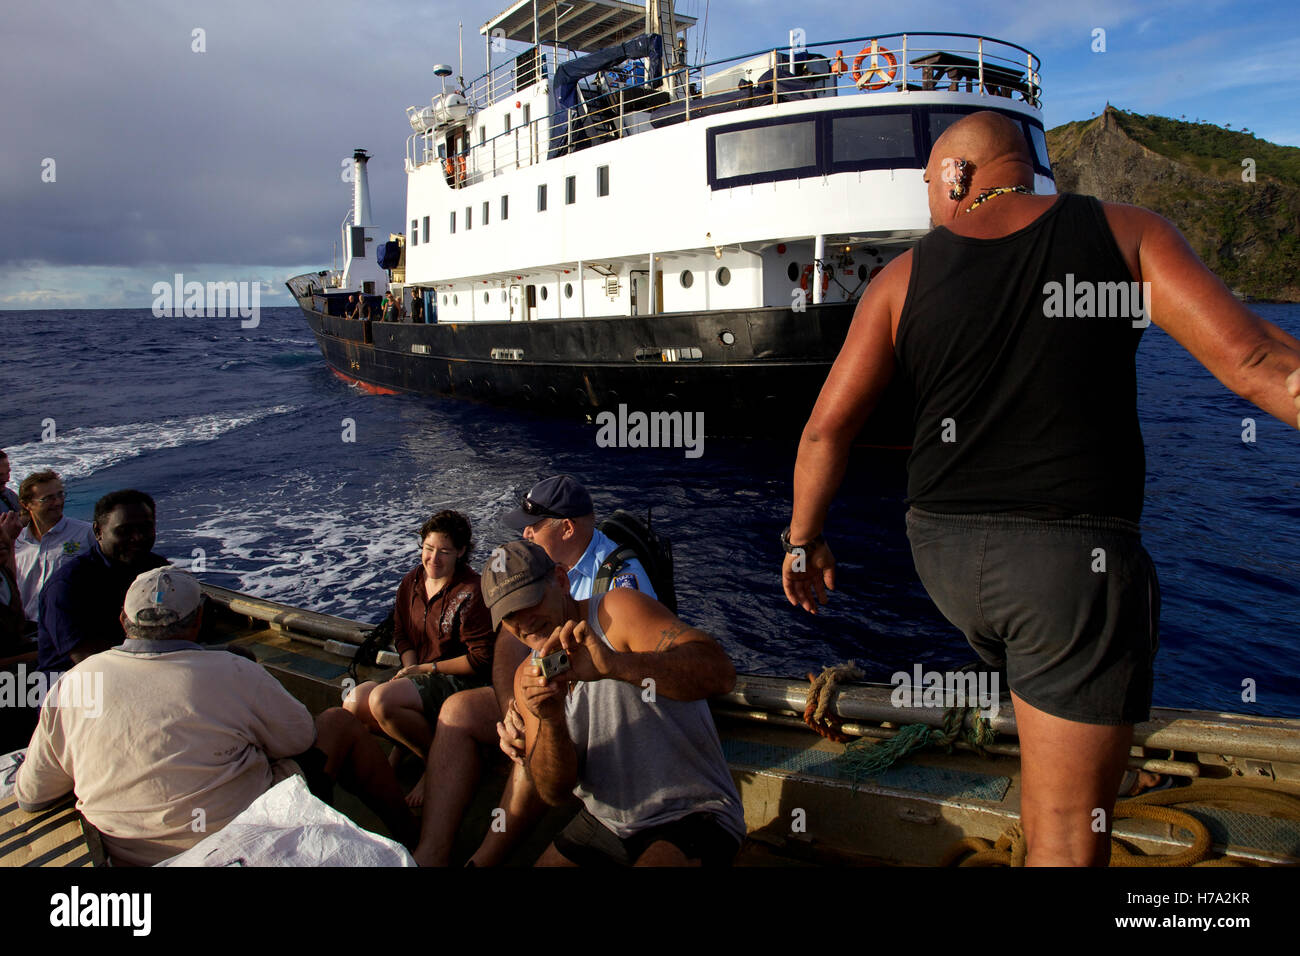 Pitcairn, Söhne von Meuterern! -31/05/2012 - Pitcairn / Pitcairn - Piraten Klinke Warren auf dem langen Boot o ' Leary, geht bei der Landung, kleinen Hafen von Bounty Bay Online in Pitcairn - Olivier Goujon / Le Pictorium Stockfoto